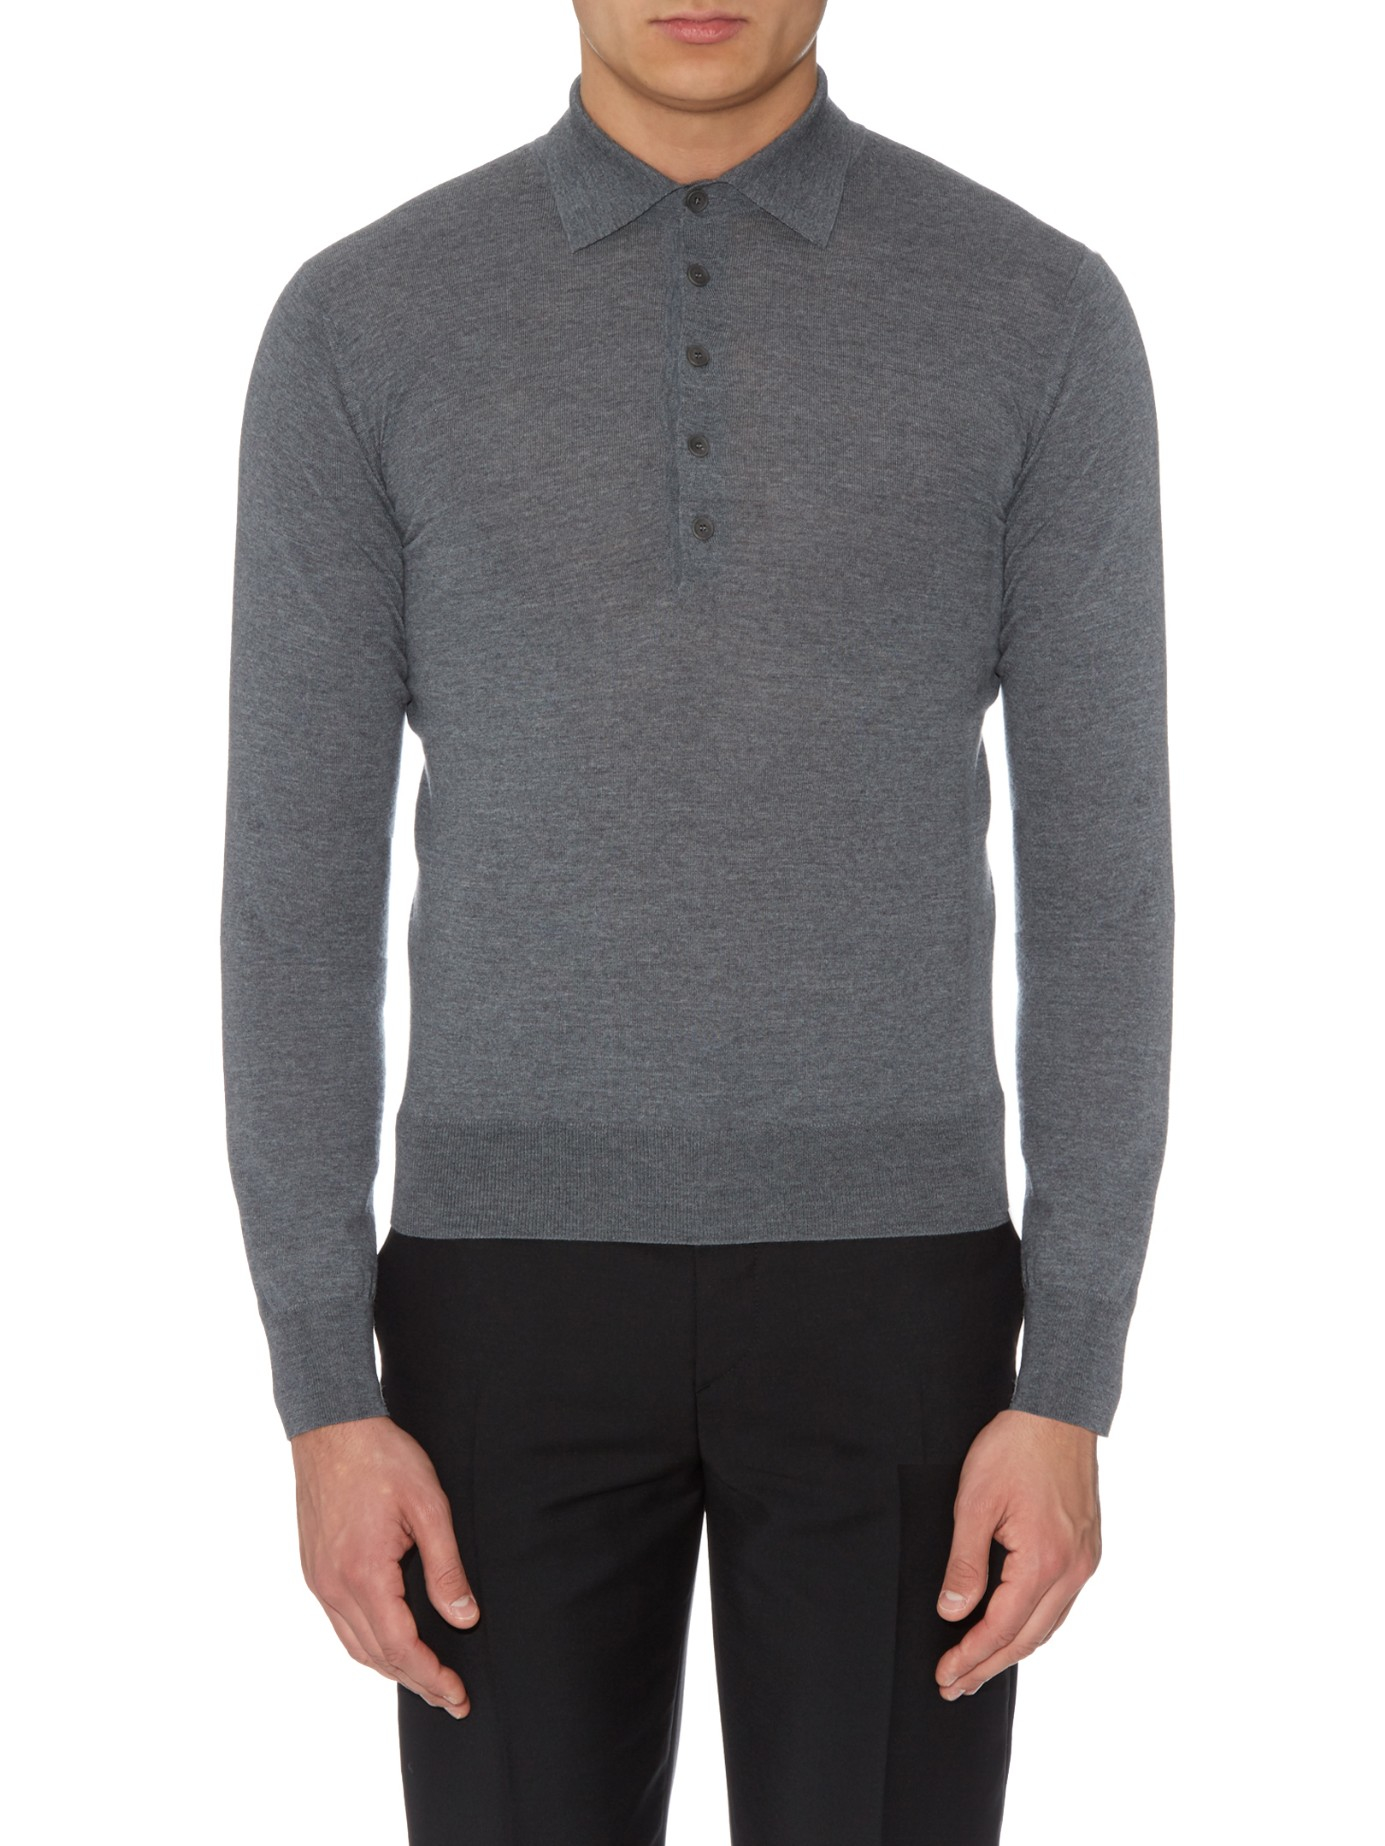 Lyst - Bottega Veneta Long-sleeved Merino-wool Polo Shirt in Gray for Men